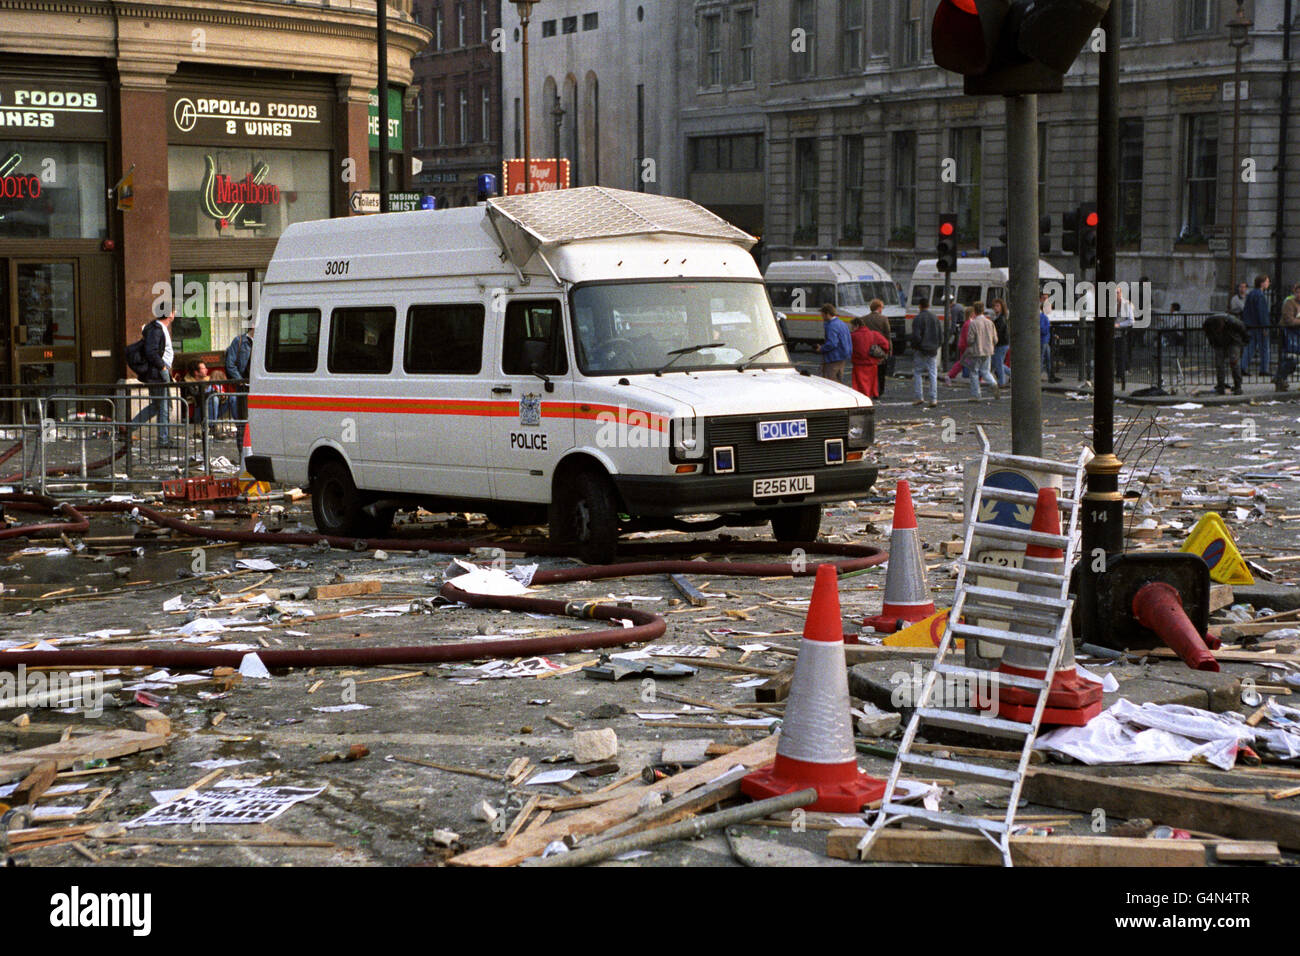 Ein verlassener Polizeiwagen inmitten der Trümmer, die durch gewalttätige Anti-Umfrage-Steuerdemonstrationen im Zentrum von London verursacht wurden. Stockfoto